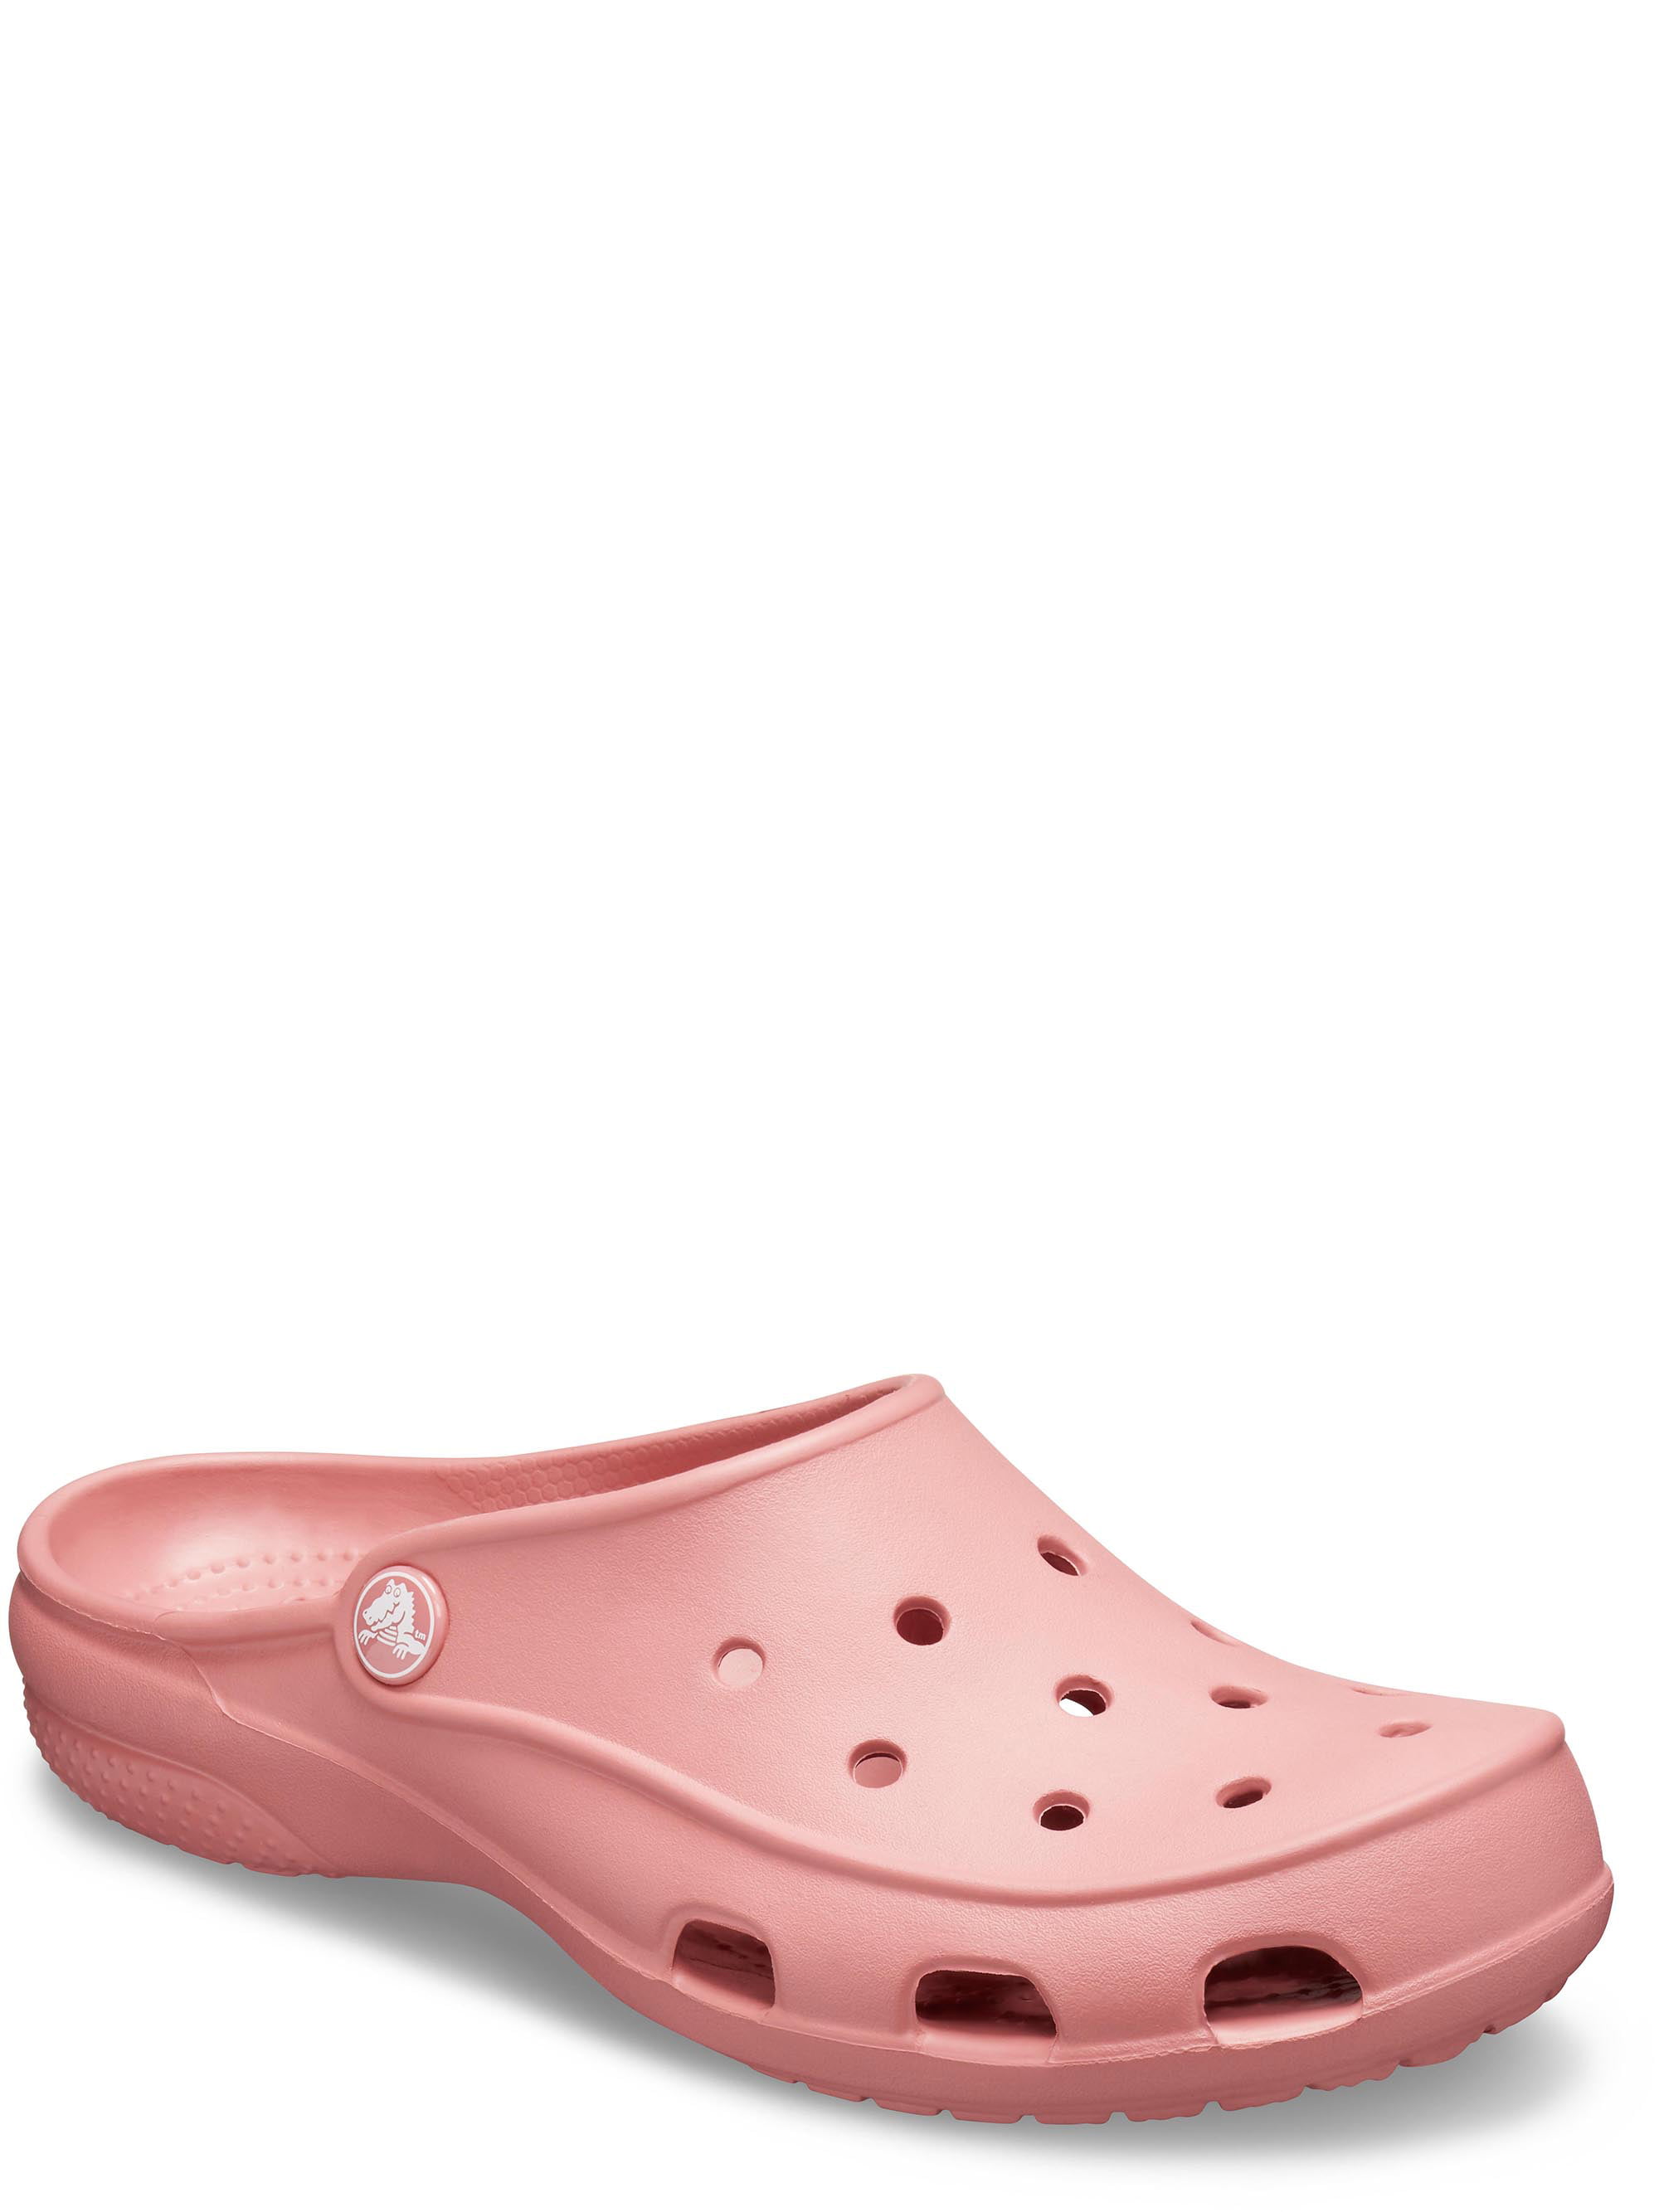 walmart women's crocs